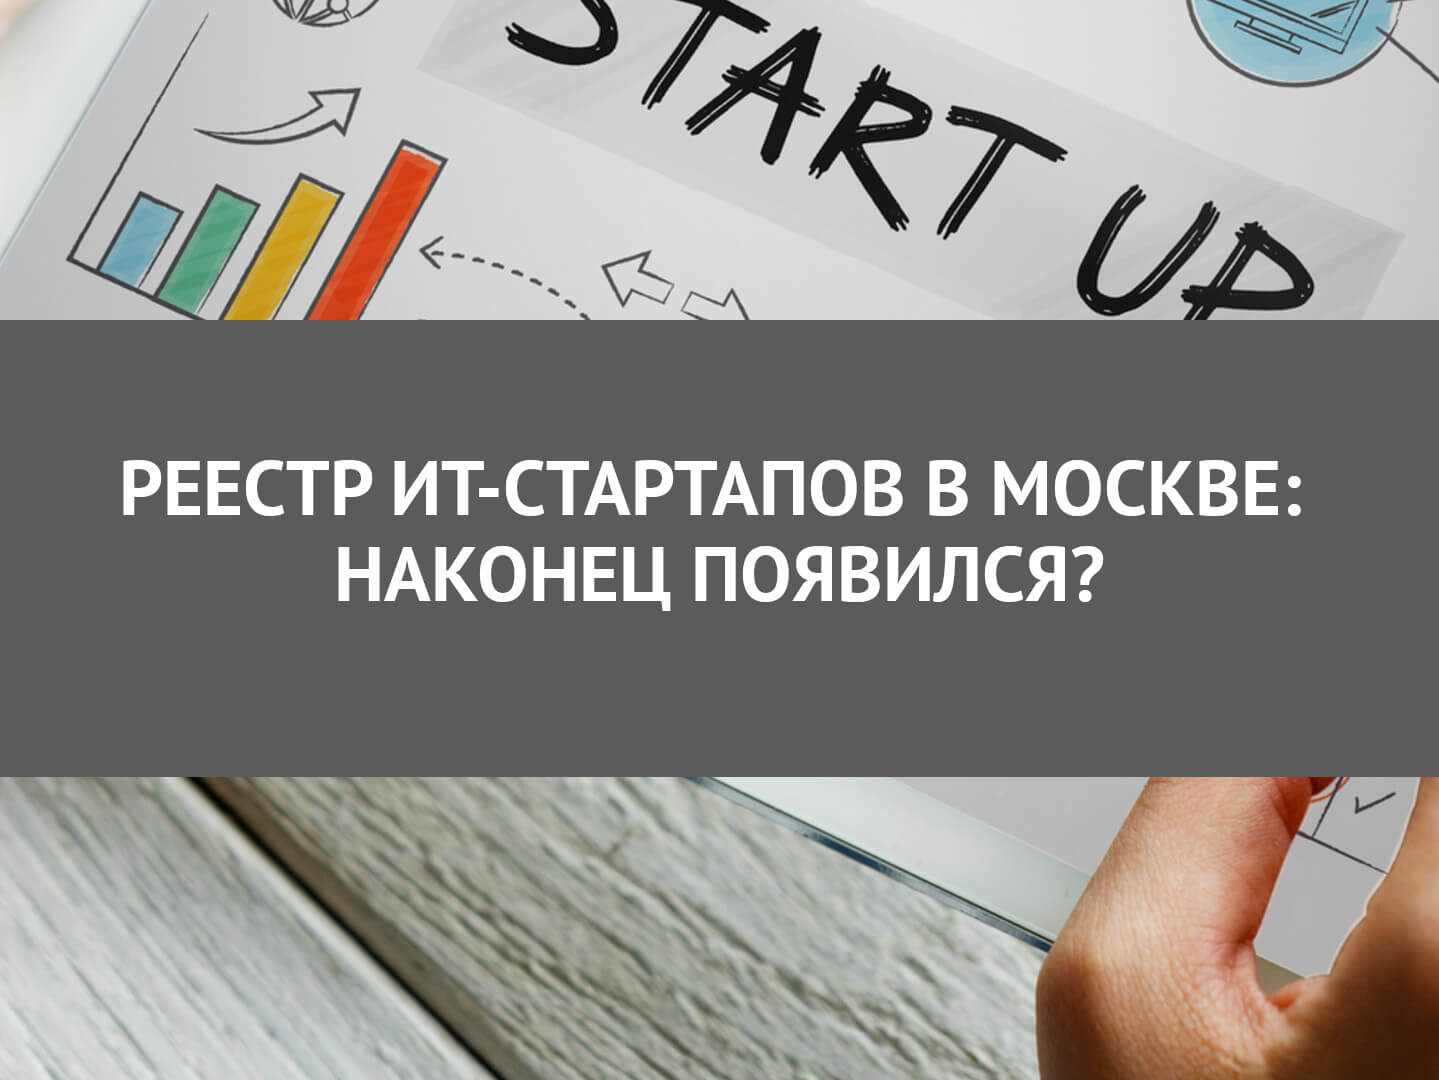 Реестр ИТ-стартапов в Москве: наконец появился?